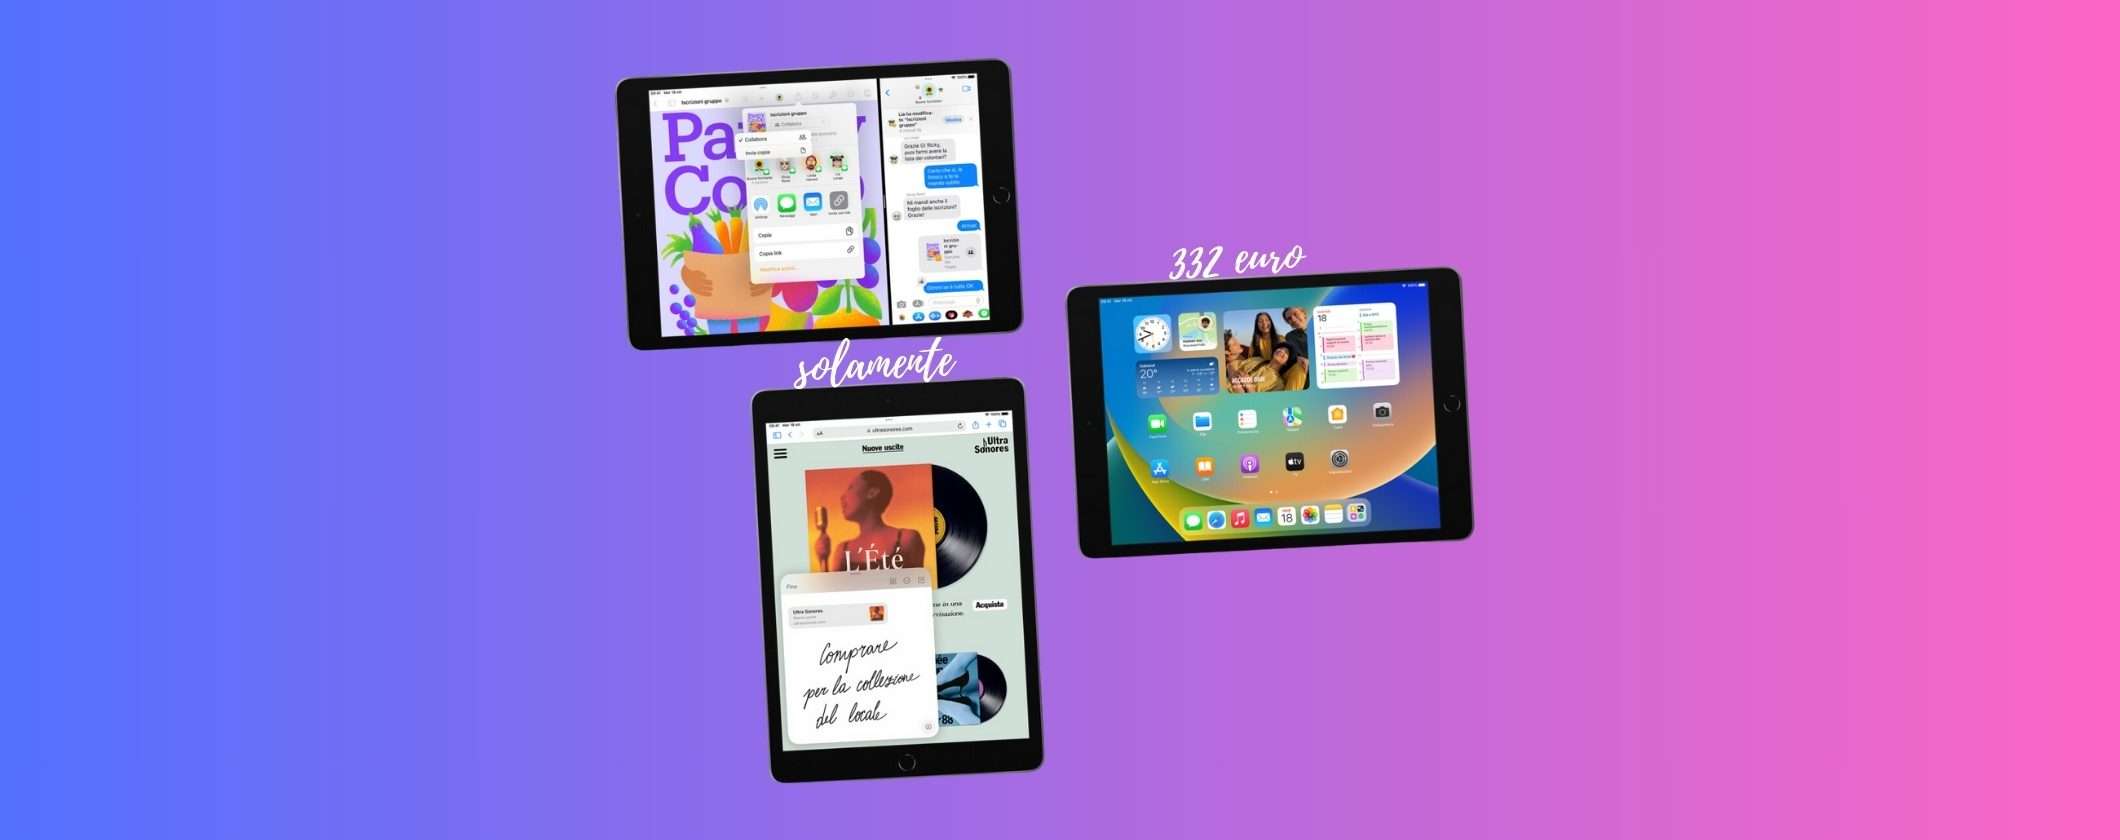 iPad 9: il tablet mitologico oggi a soli 332€ su eBay